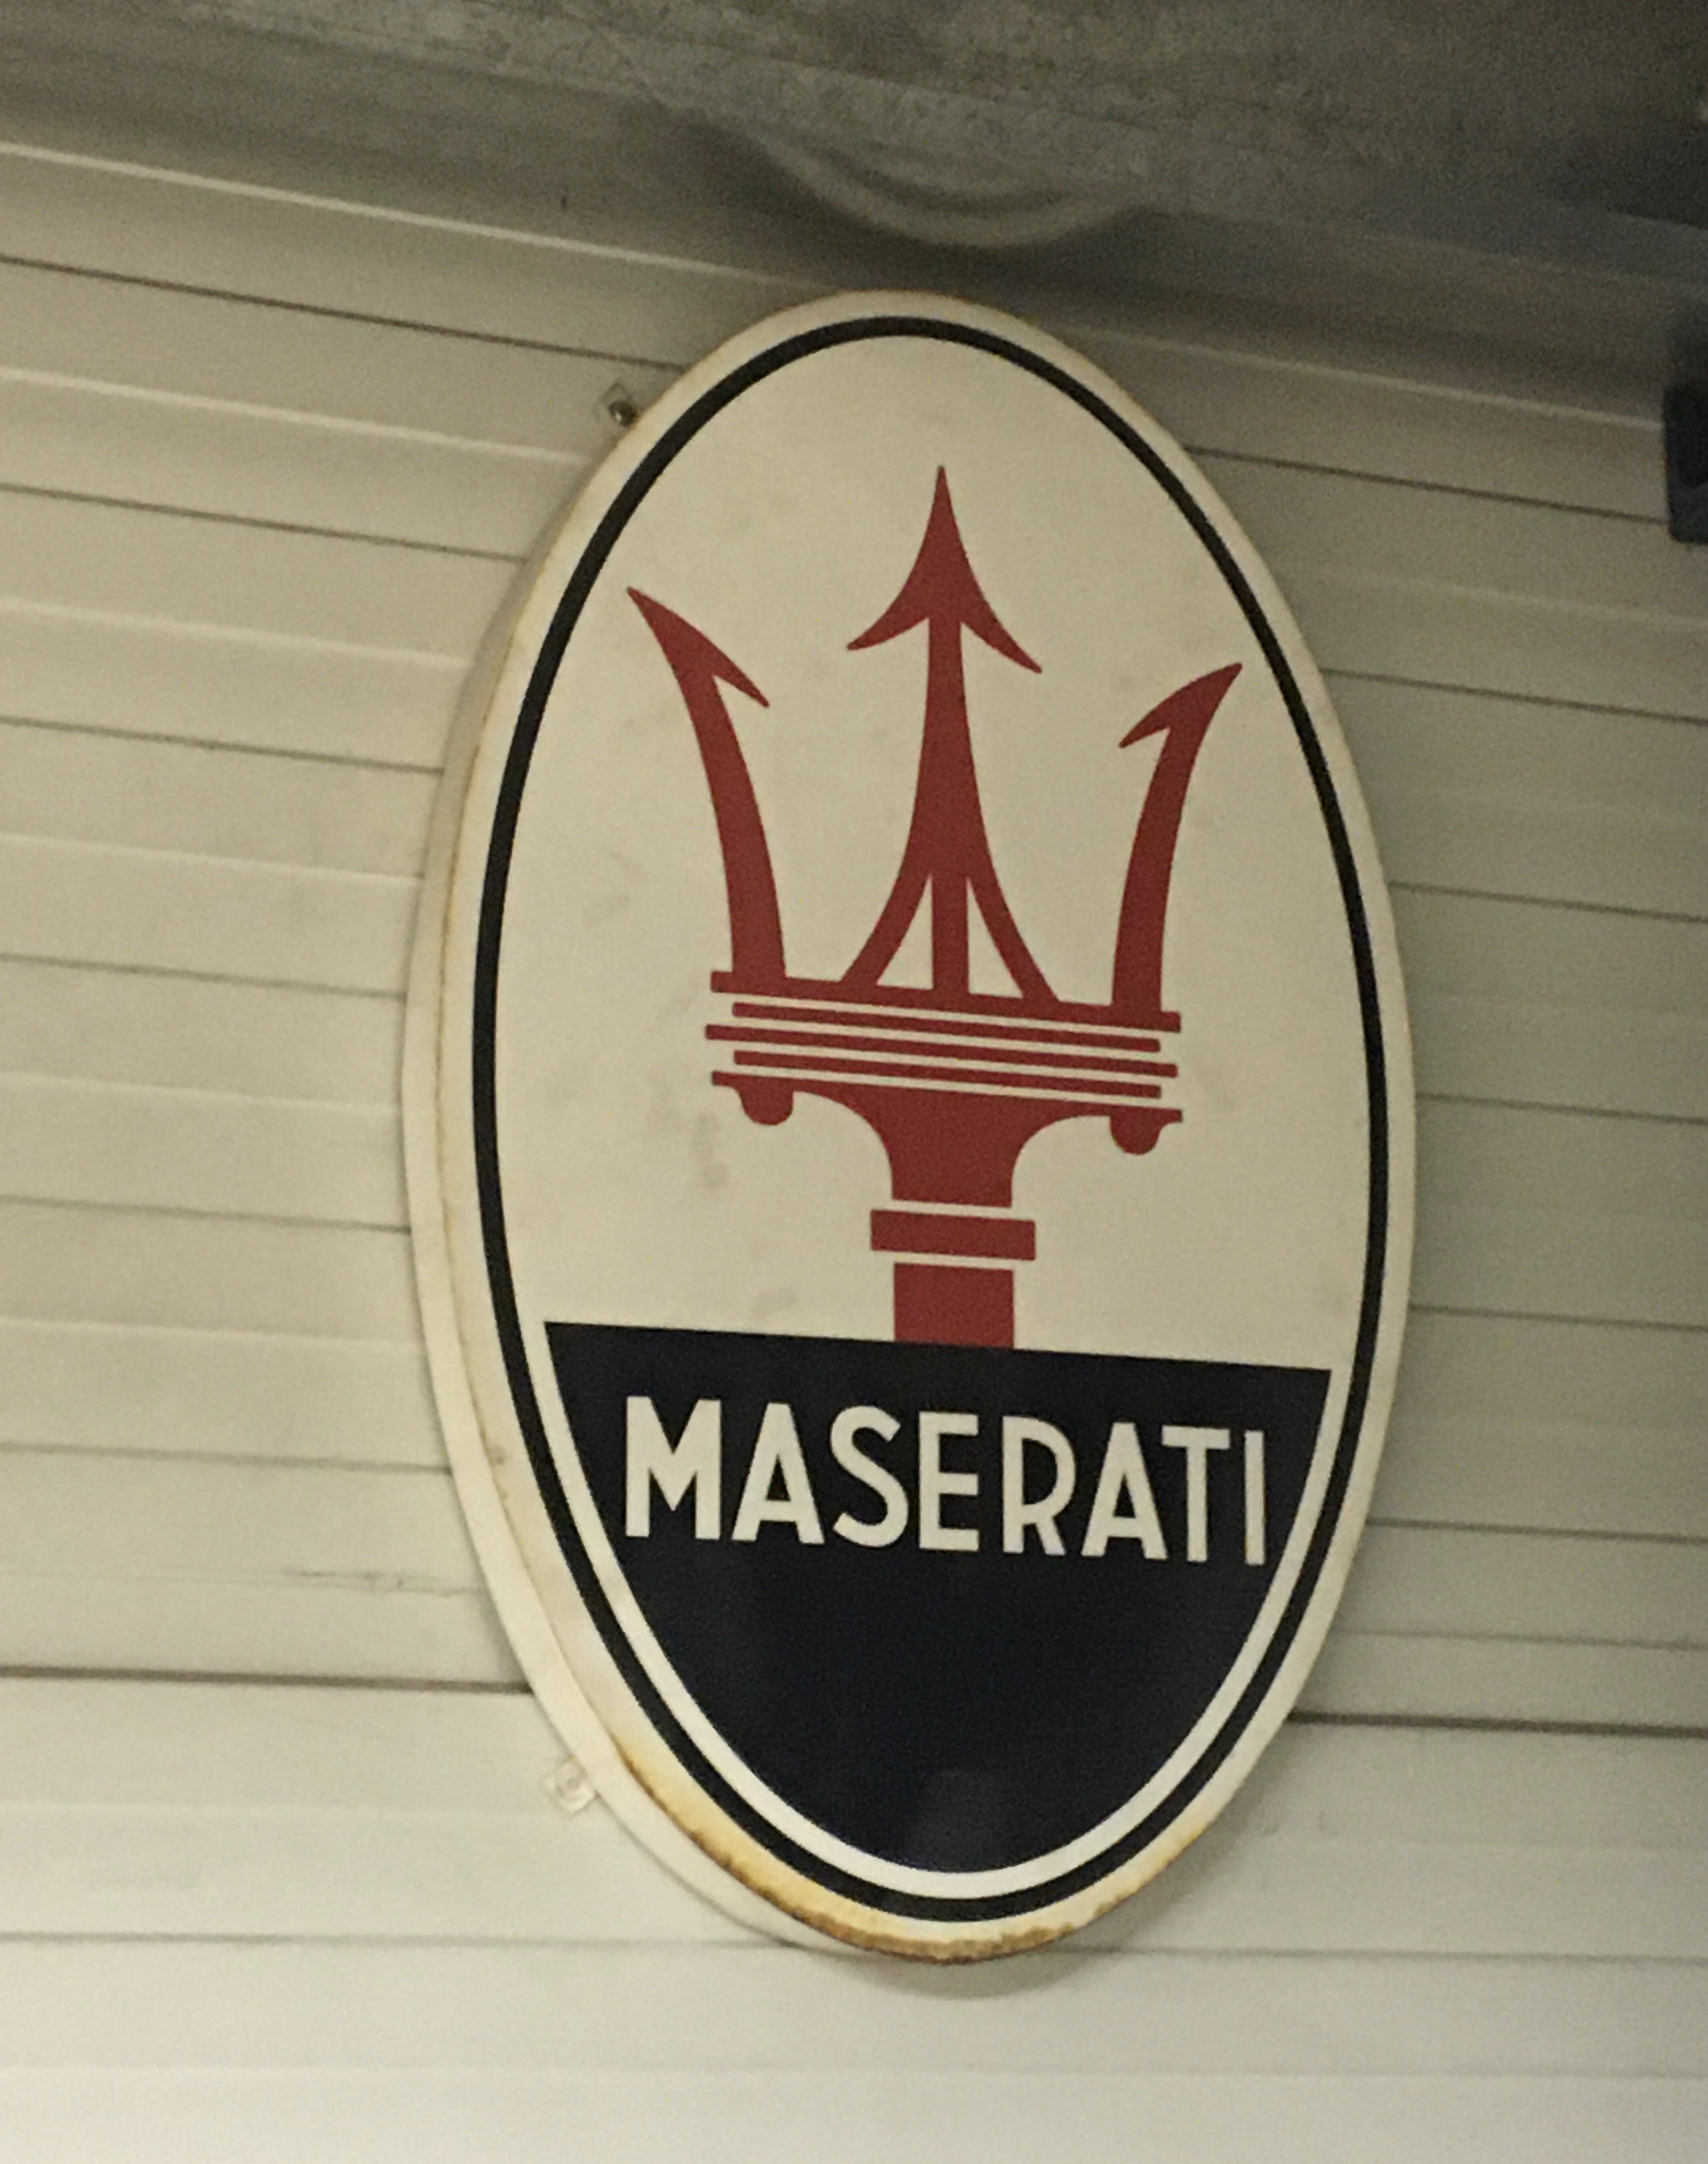 Maserati Exterior Sign